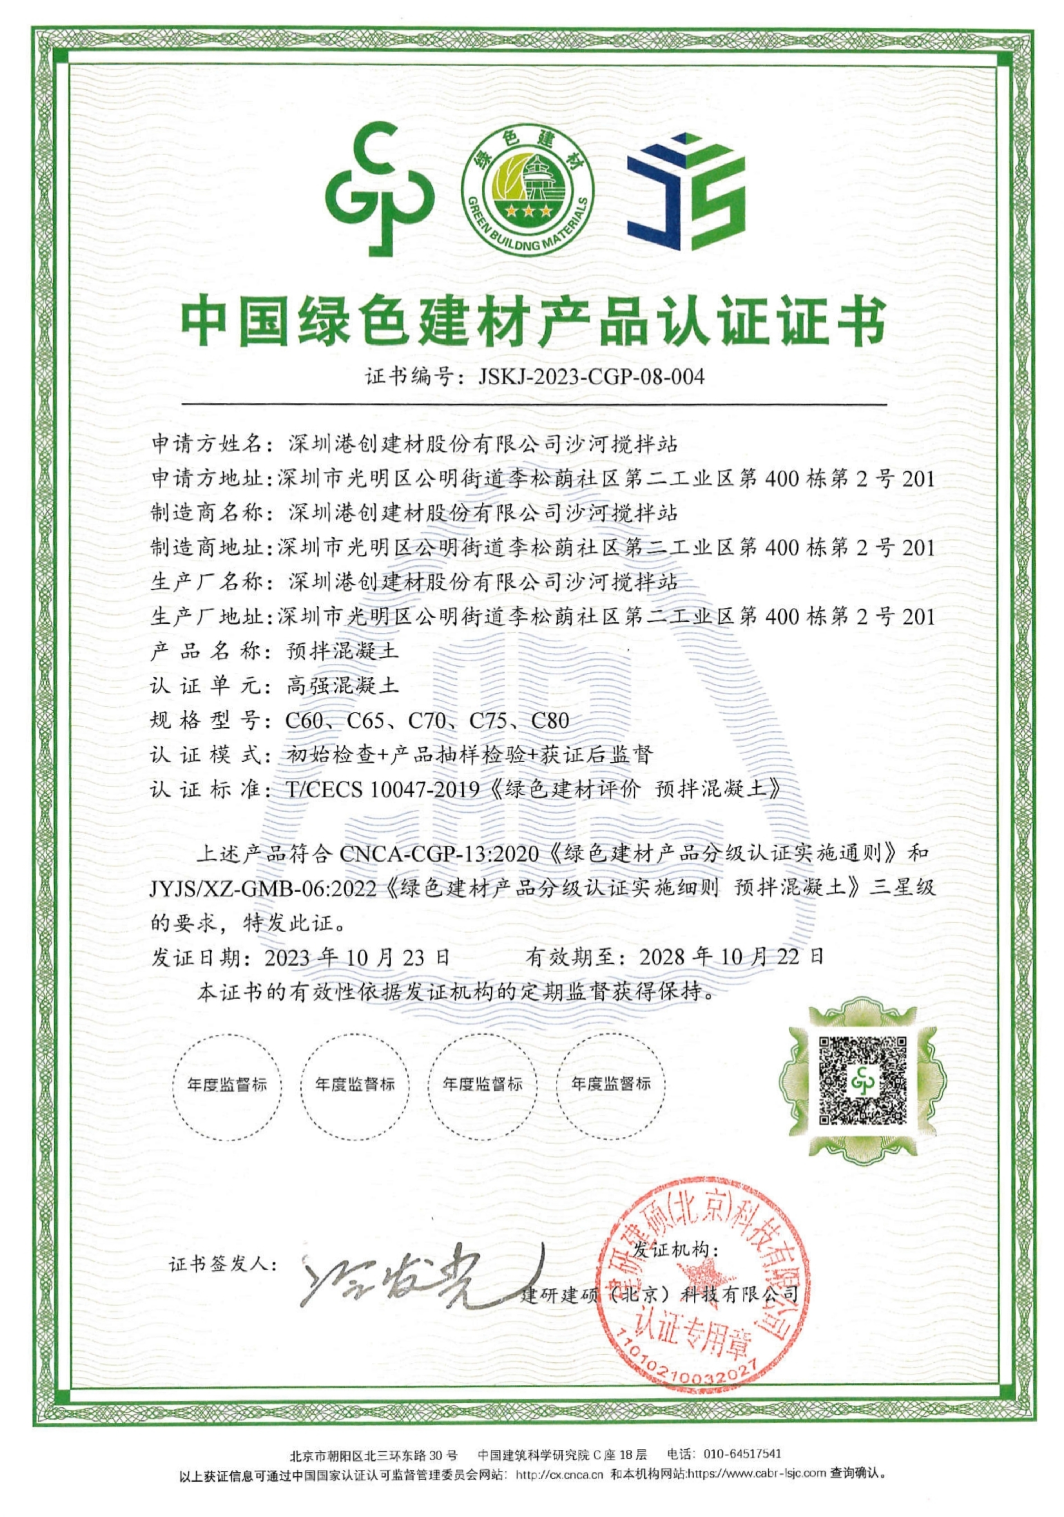 光明港創公司榮獲中國綠色建材產品三星級認證